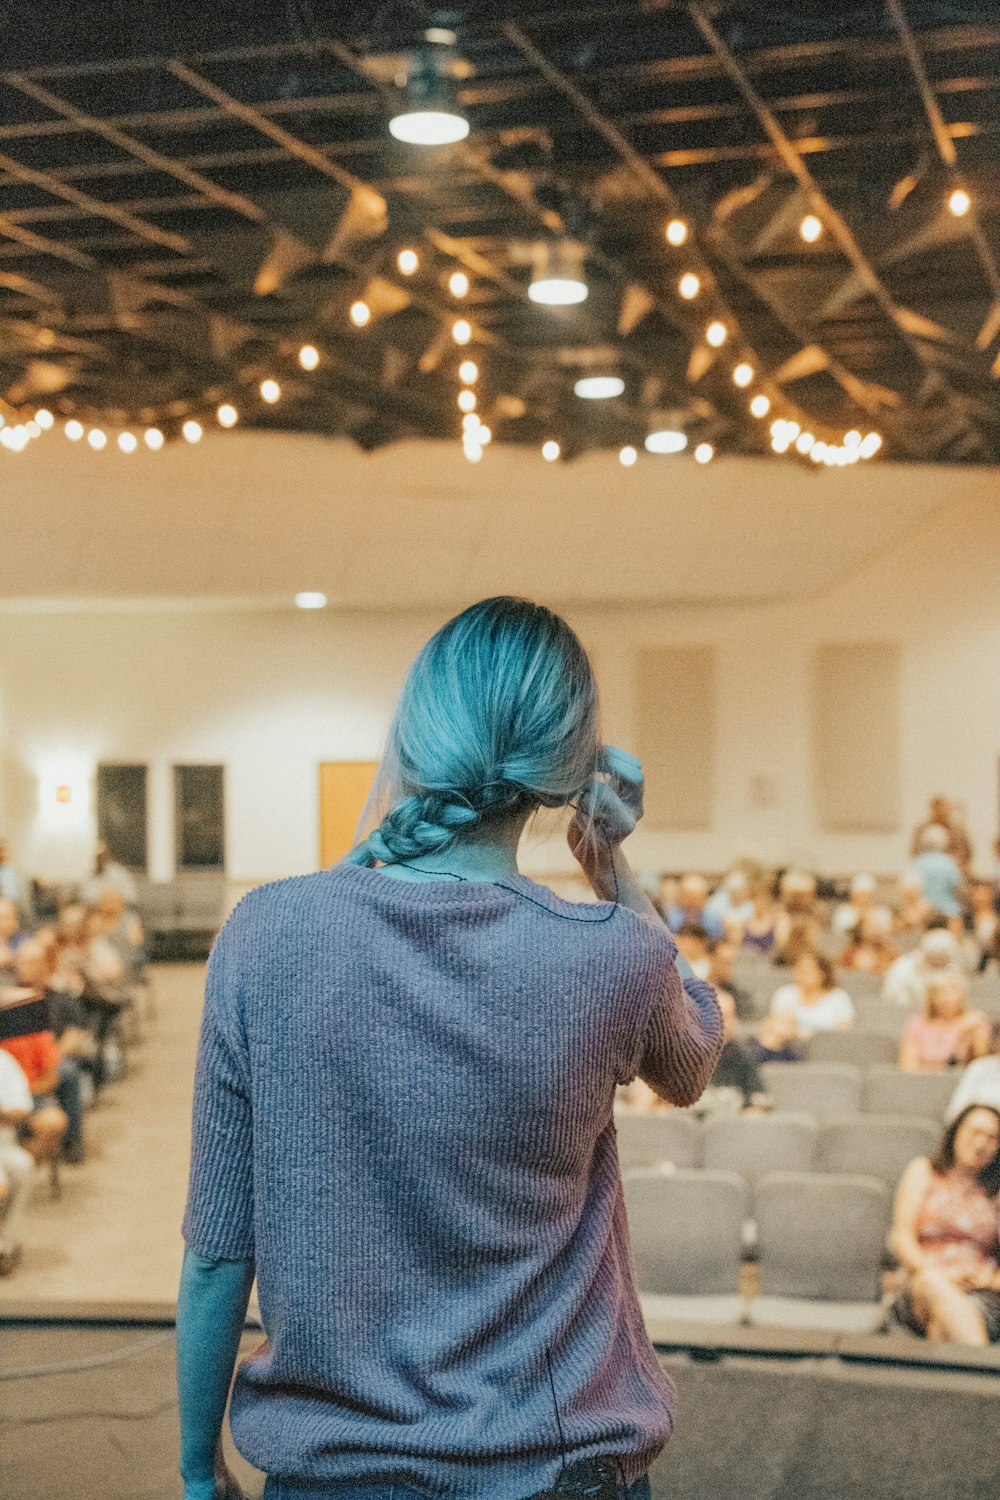 Eine Frau mit blauen Haaren, die vor einem Publikum steht